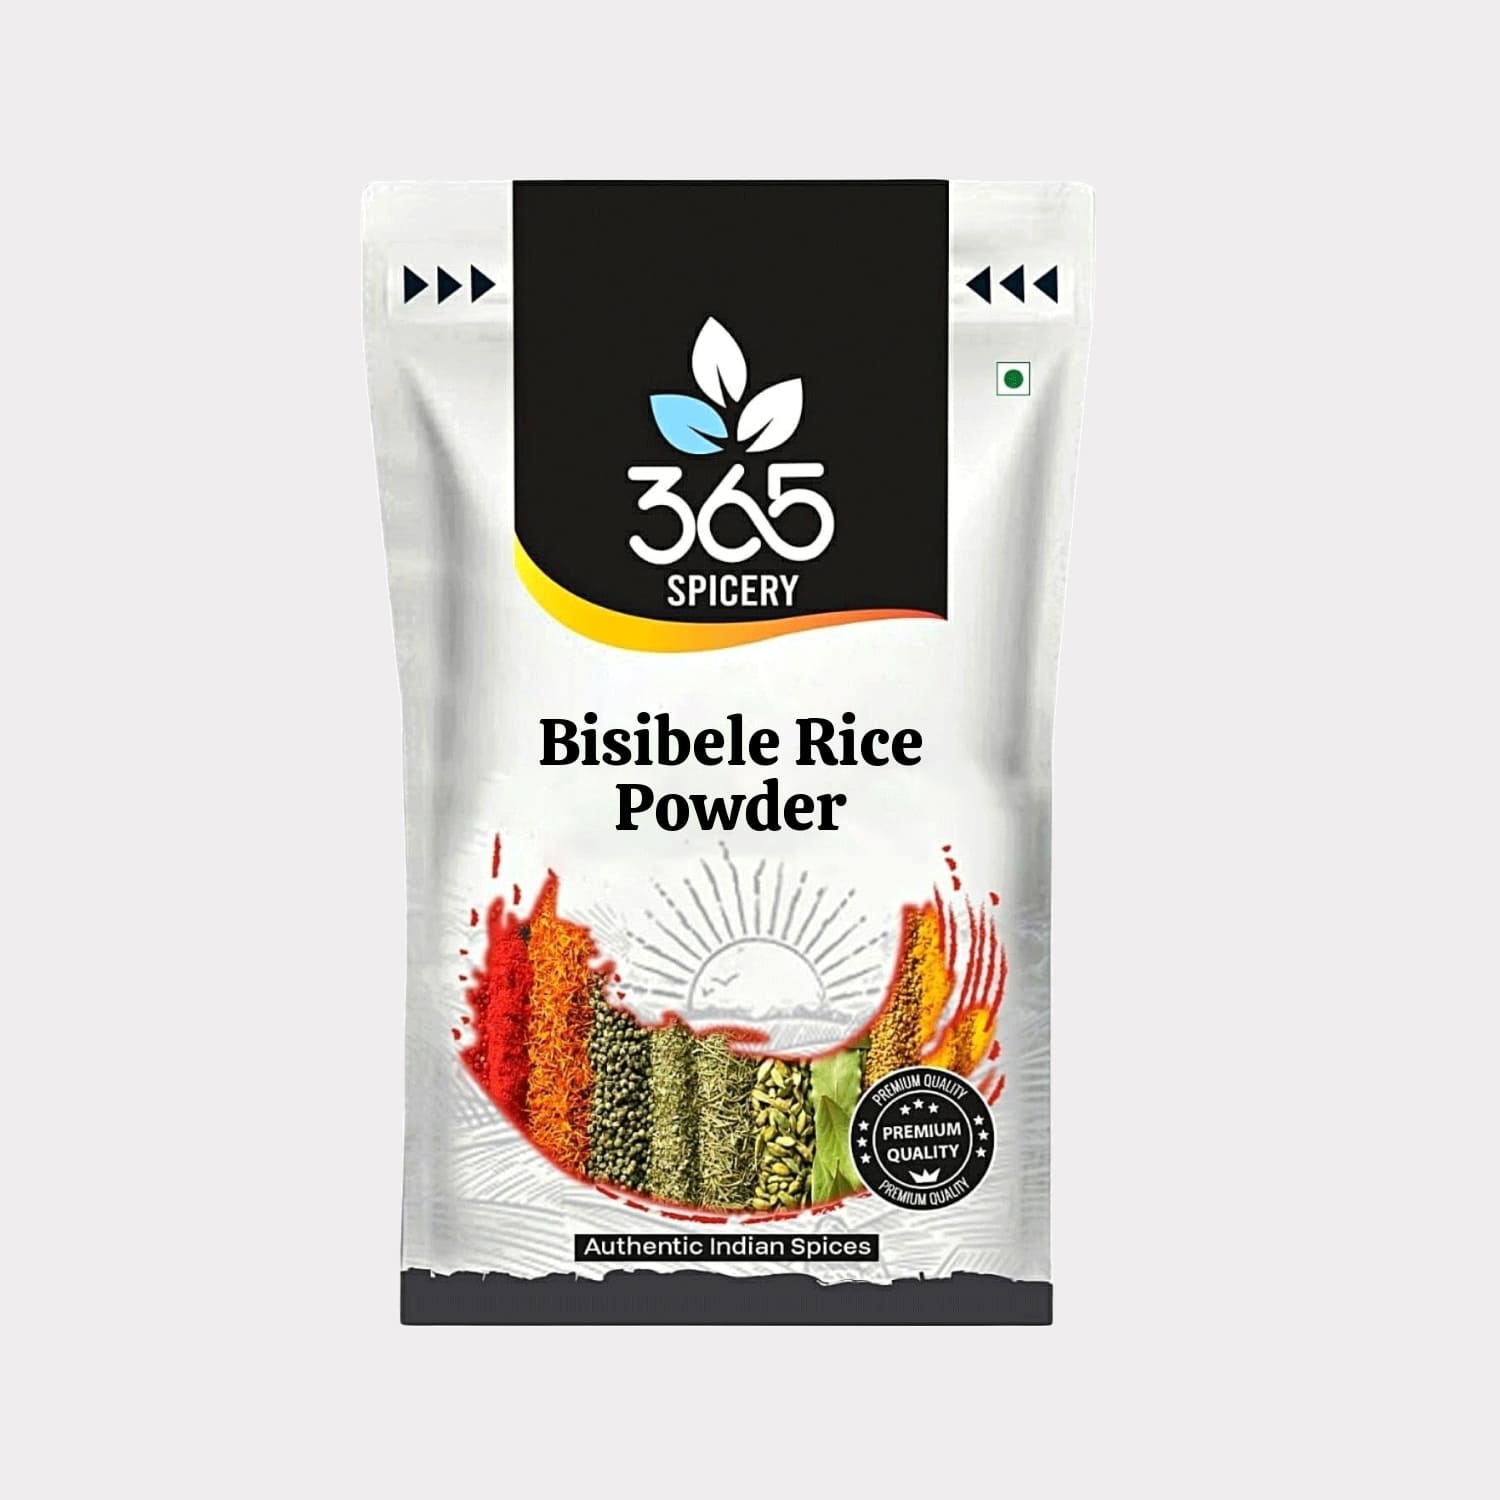 Bisibele Rice Powder